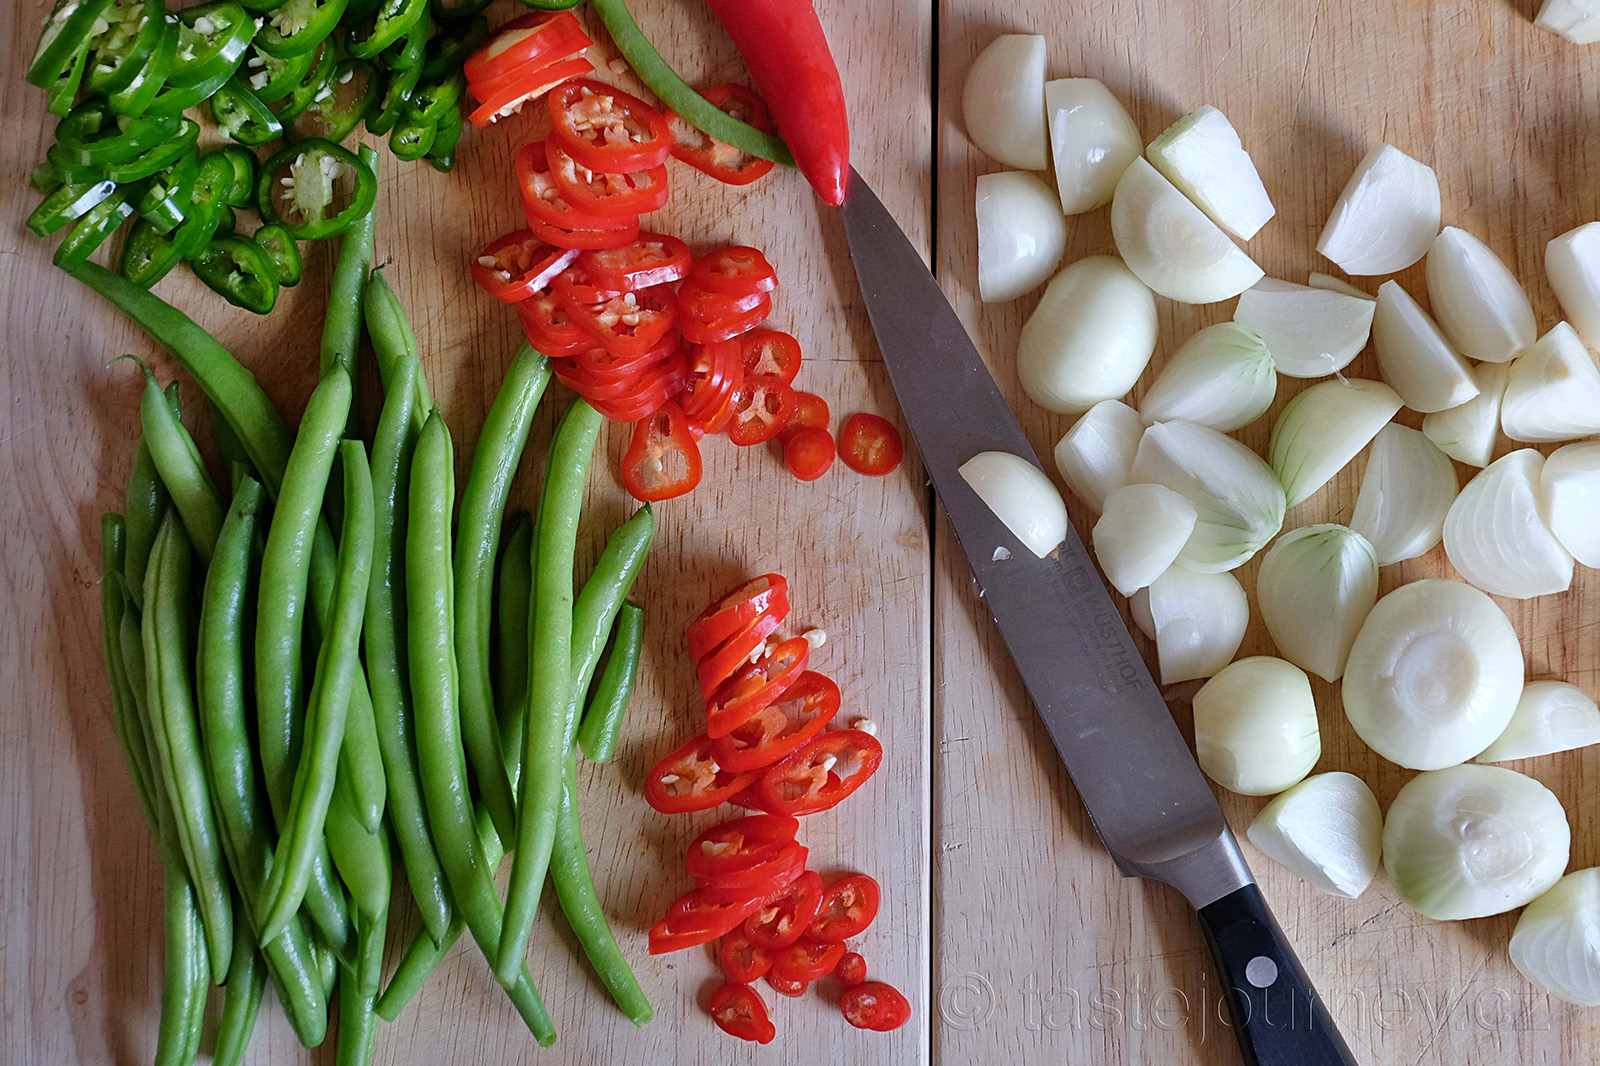 Kulaté šalotky, chilli papričky a fazolky - základní suroviny pro piccalilli